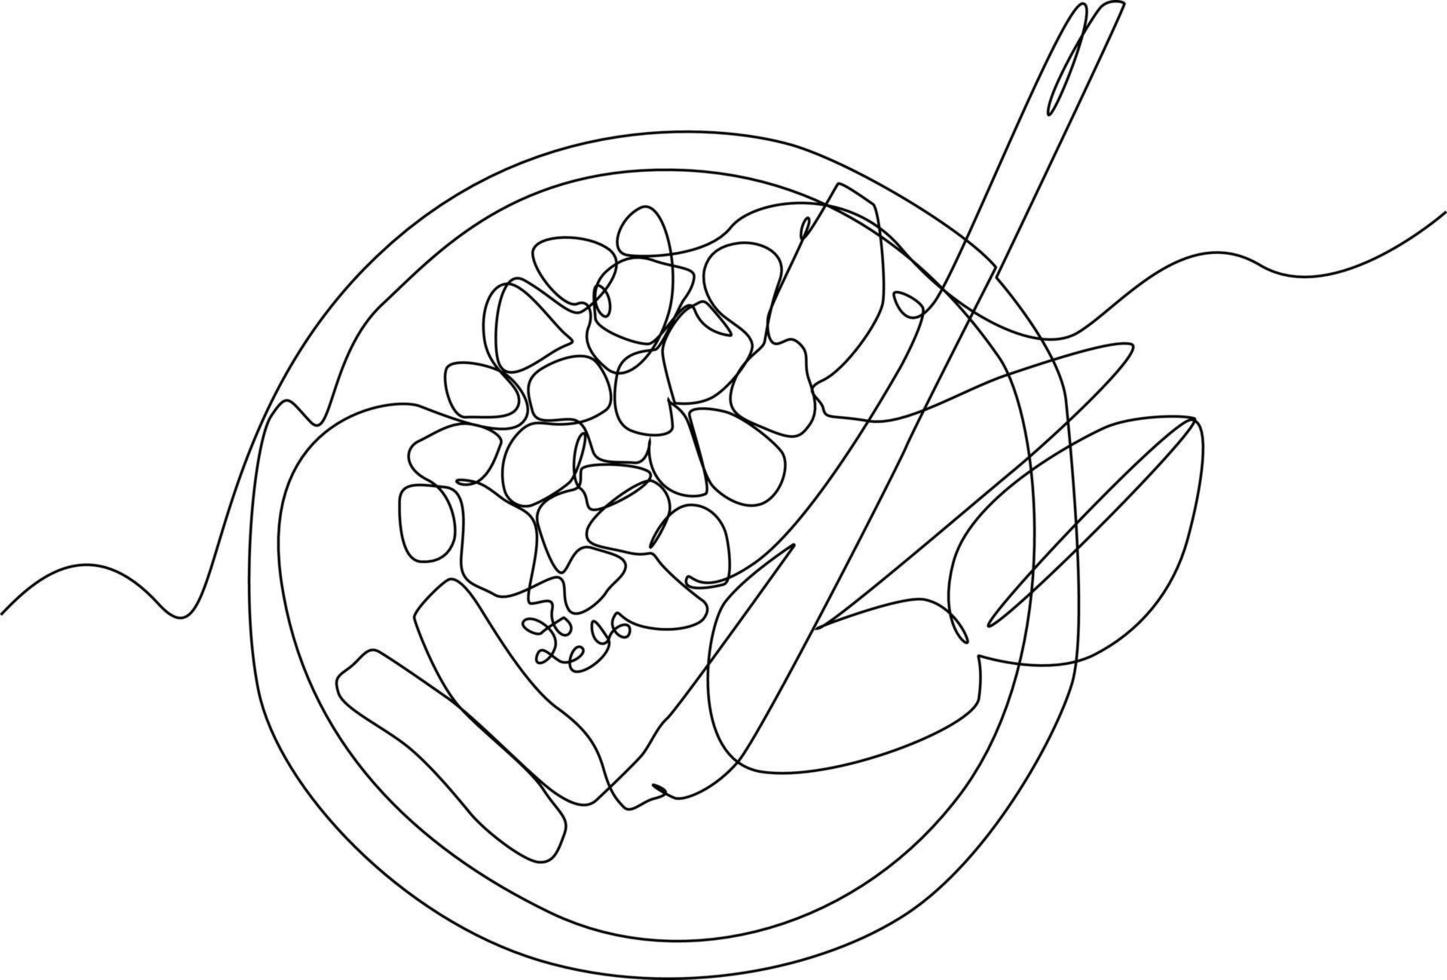 Célibataire une ligne dessin de traditionnel cuisine Ingrédients dans panier. herbes et épices concept. continu ligne dessin conception graphique vecteur illustration.